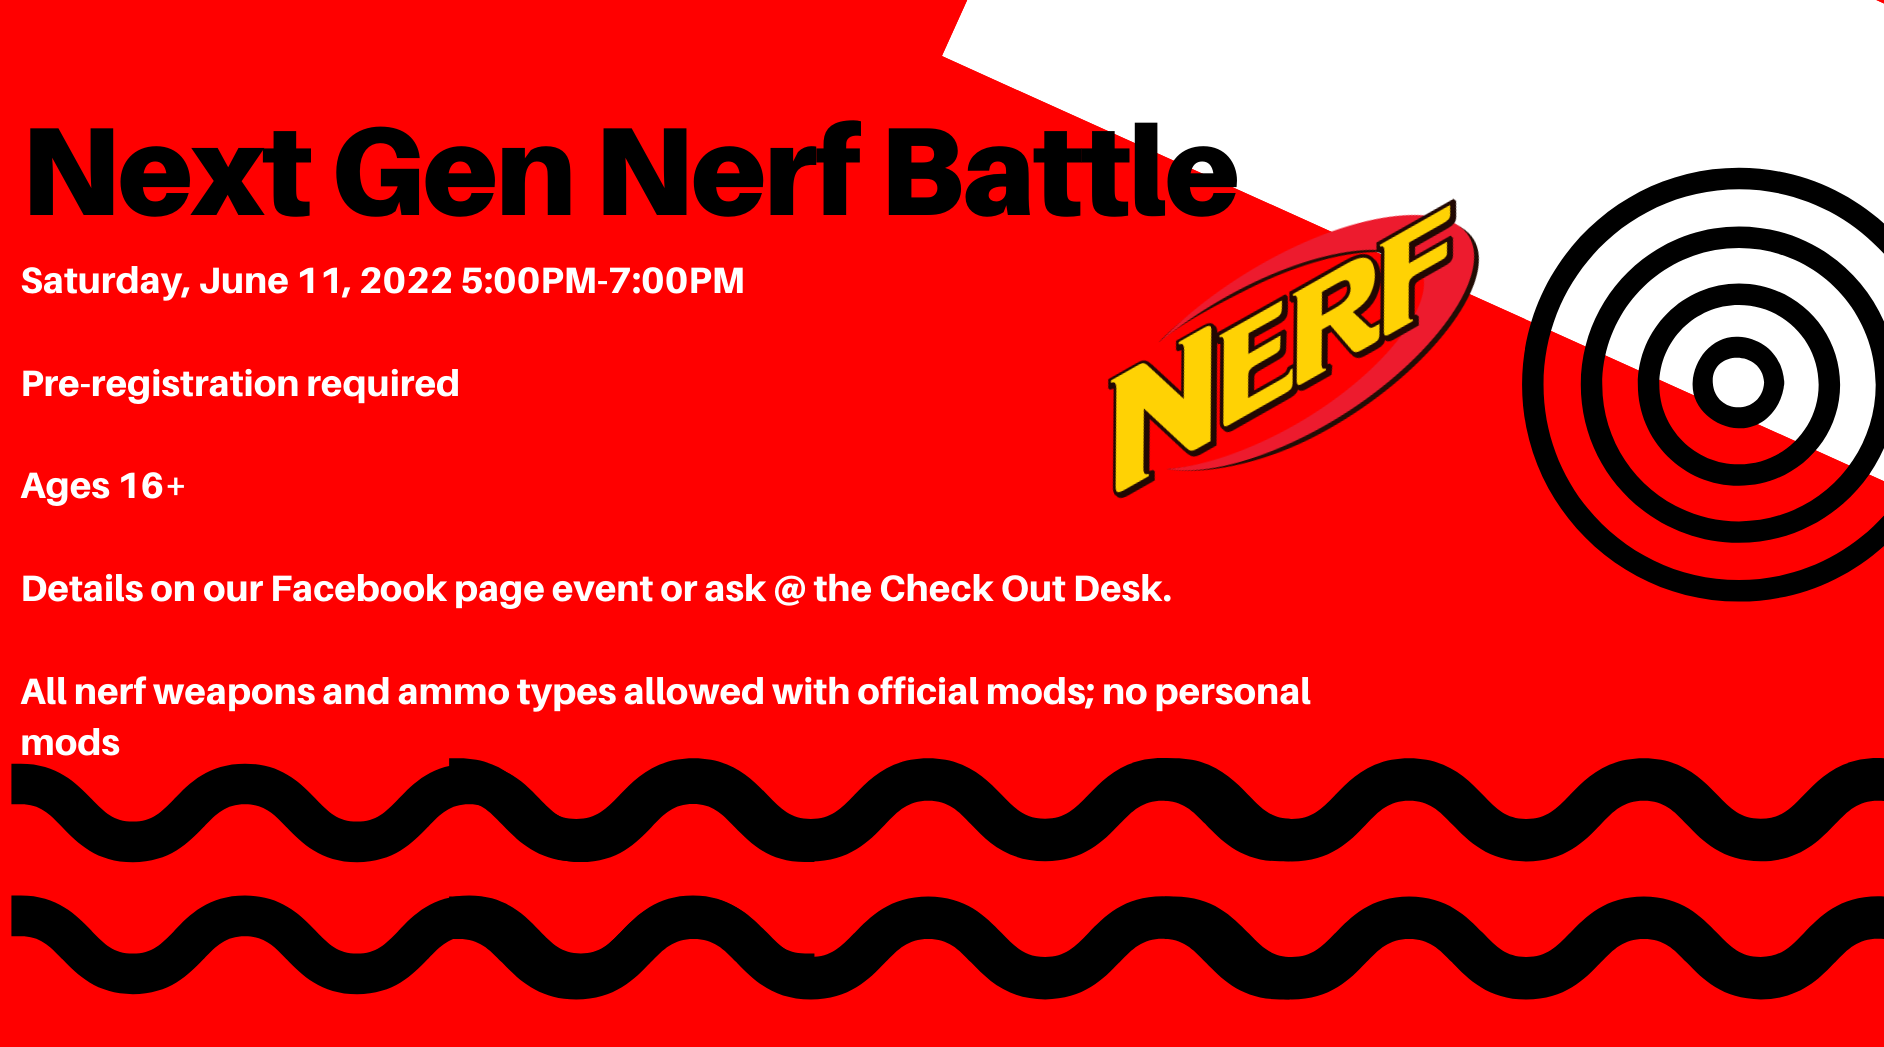 Next Gen Nerf Battle